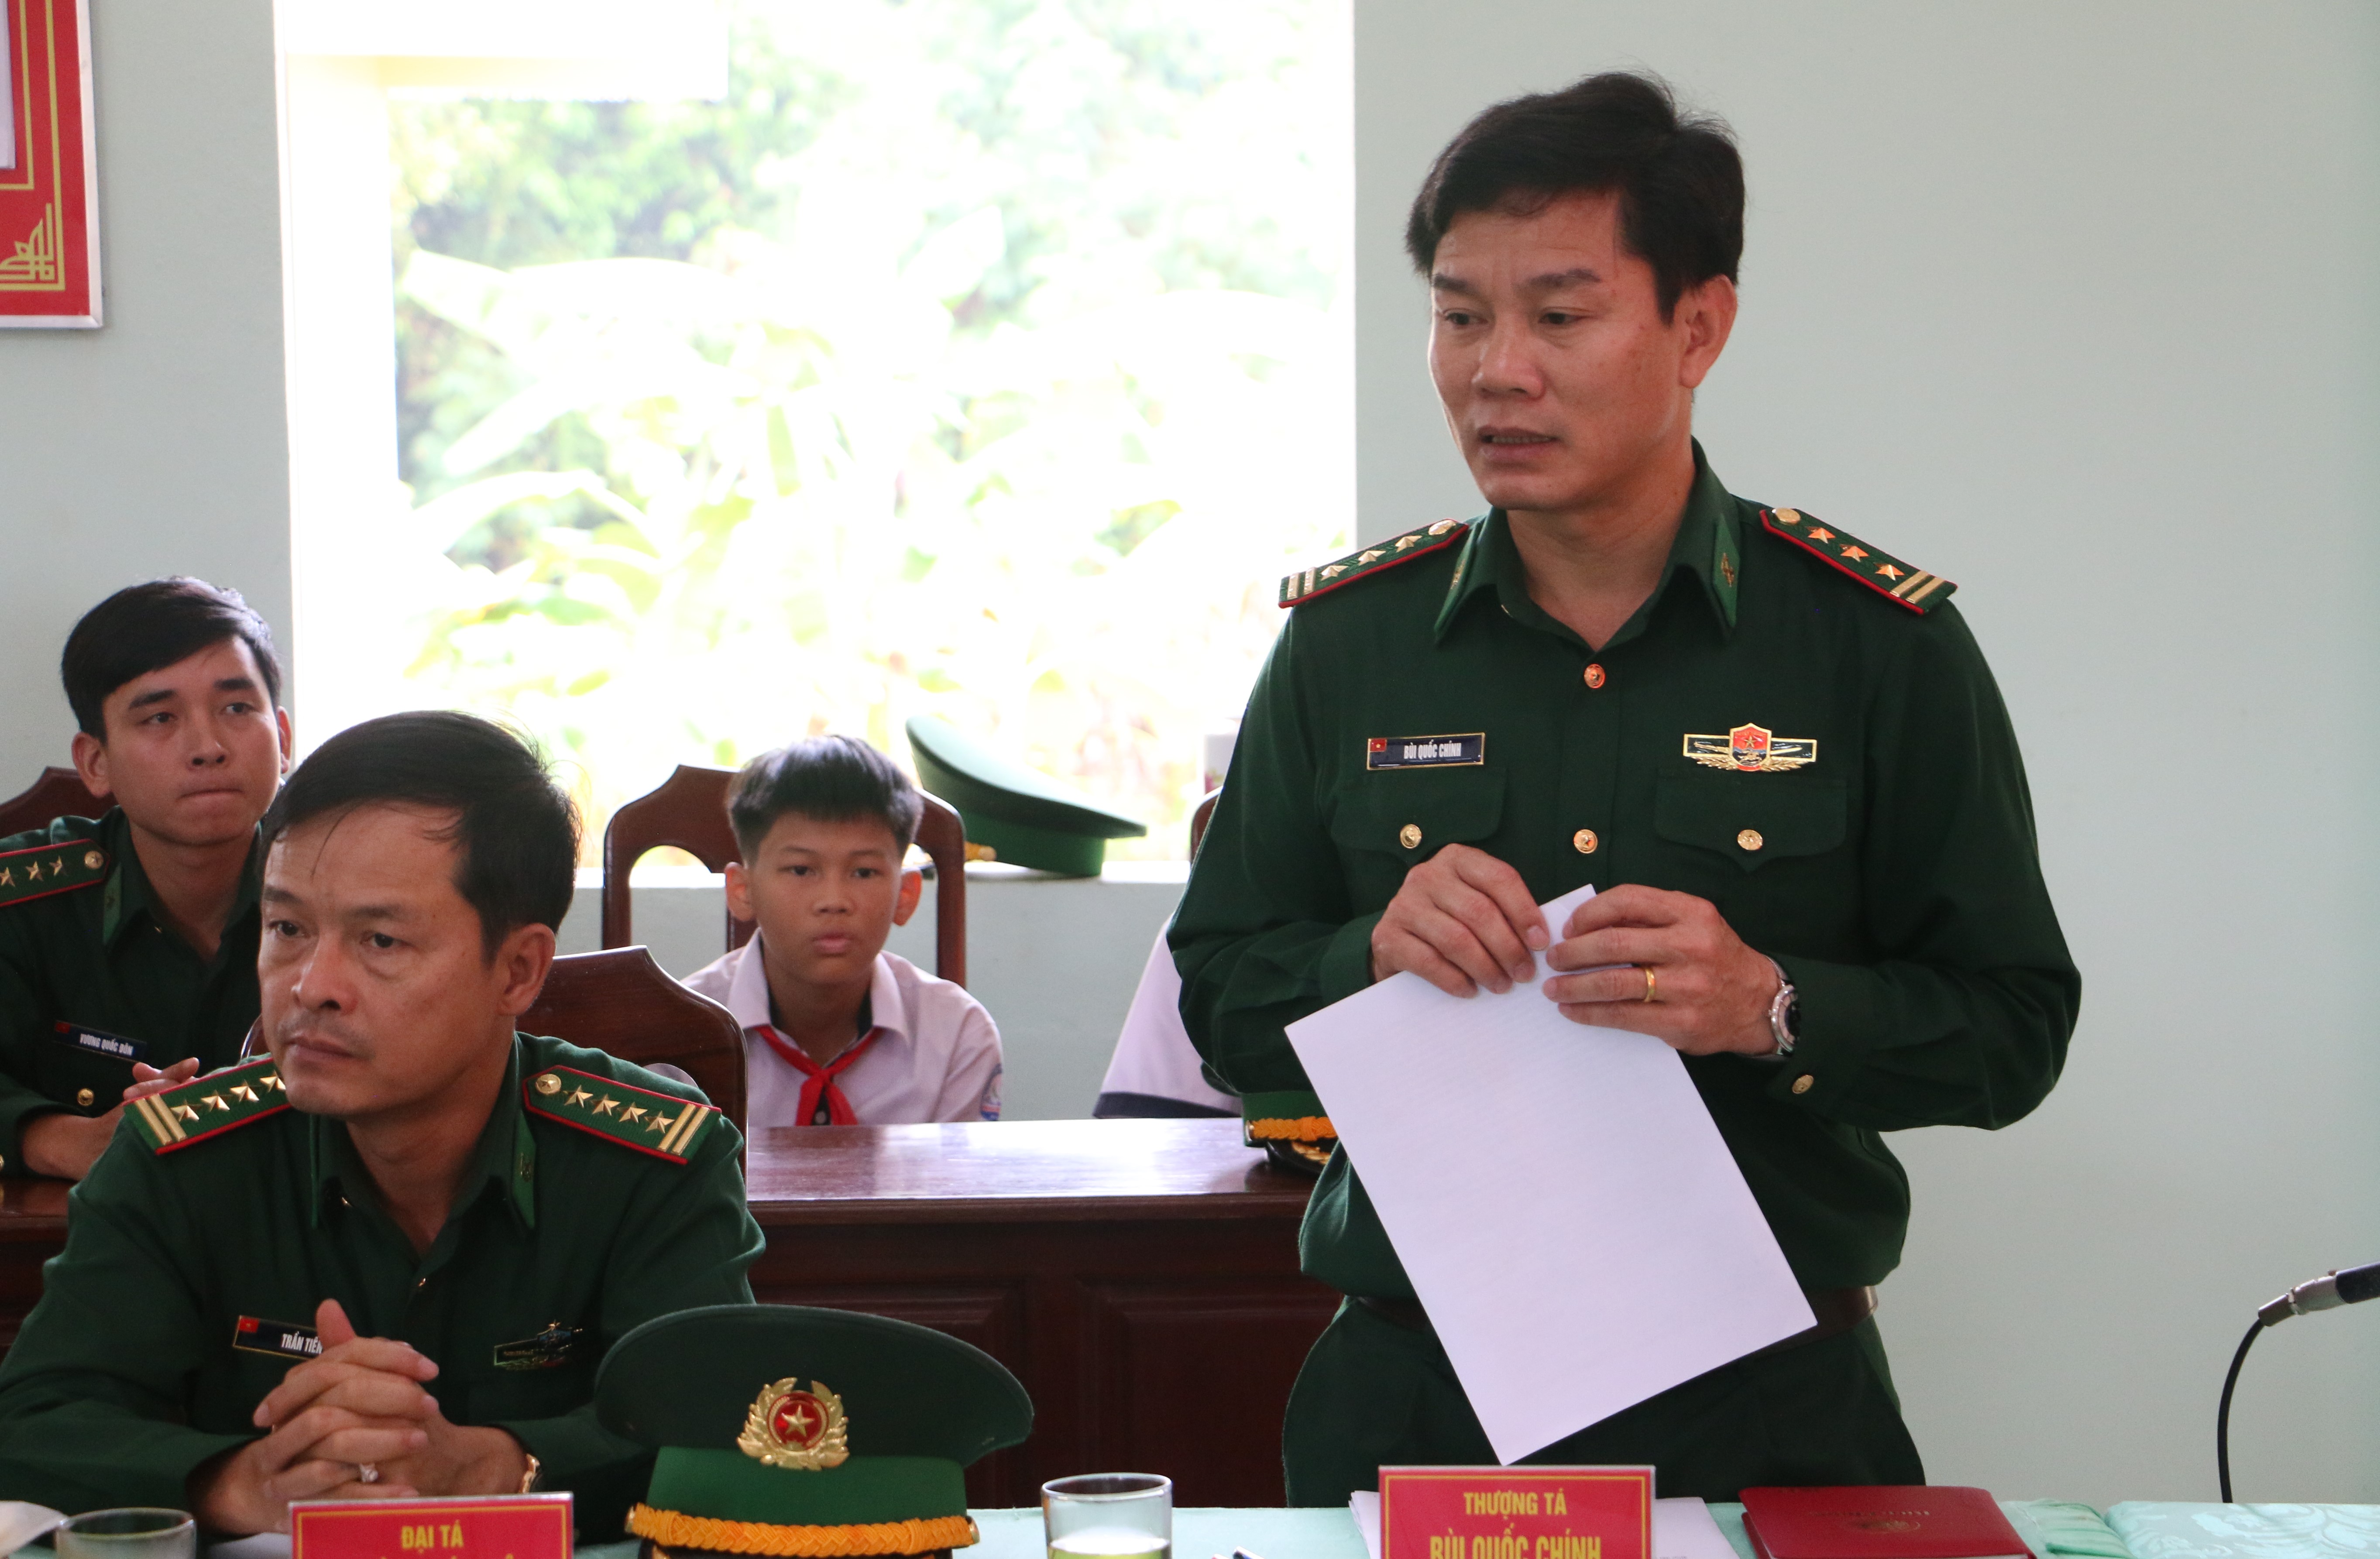 Thượng tá Bùi Quốc Chính báo cáo với đoàn công tác của Thường trực Tỉnh ủy về công tác của đơn vị. Quang Tấn